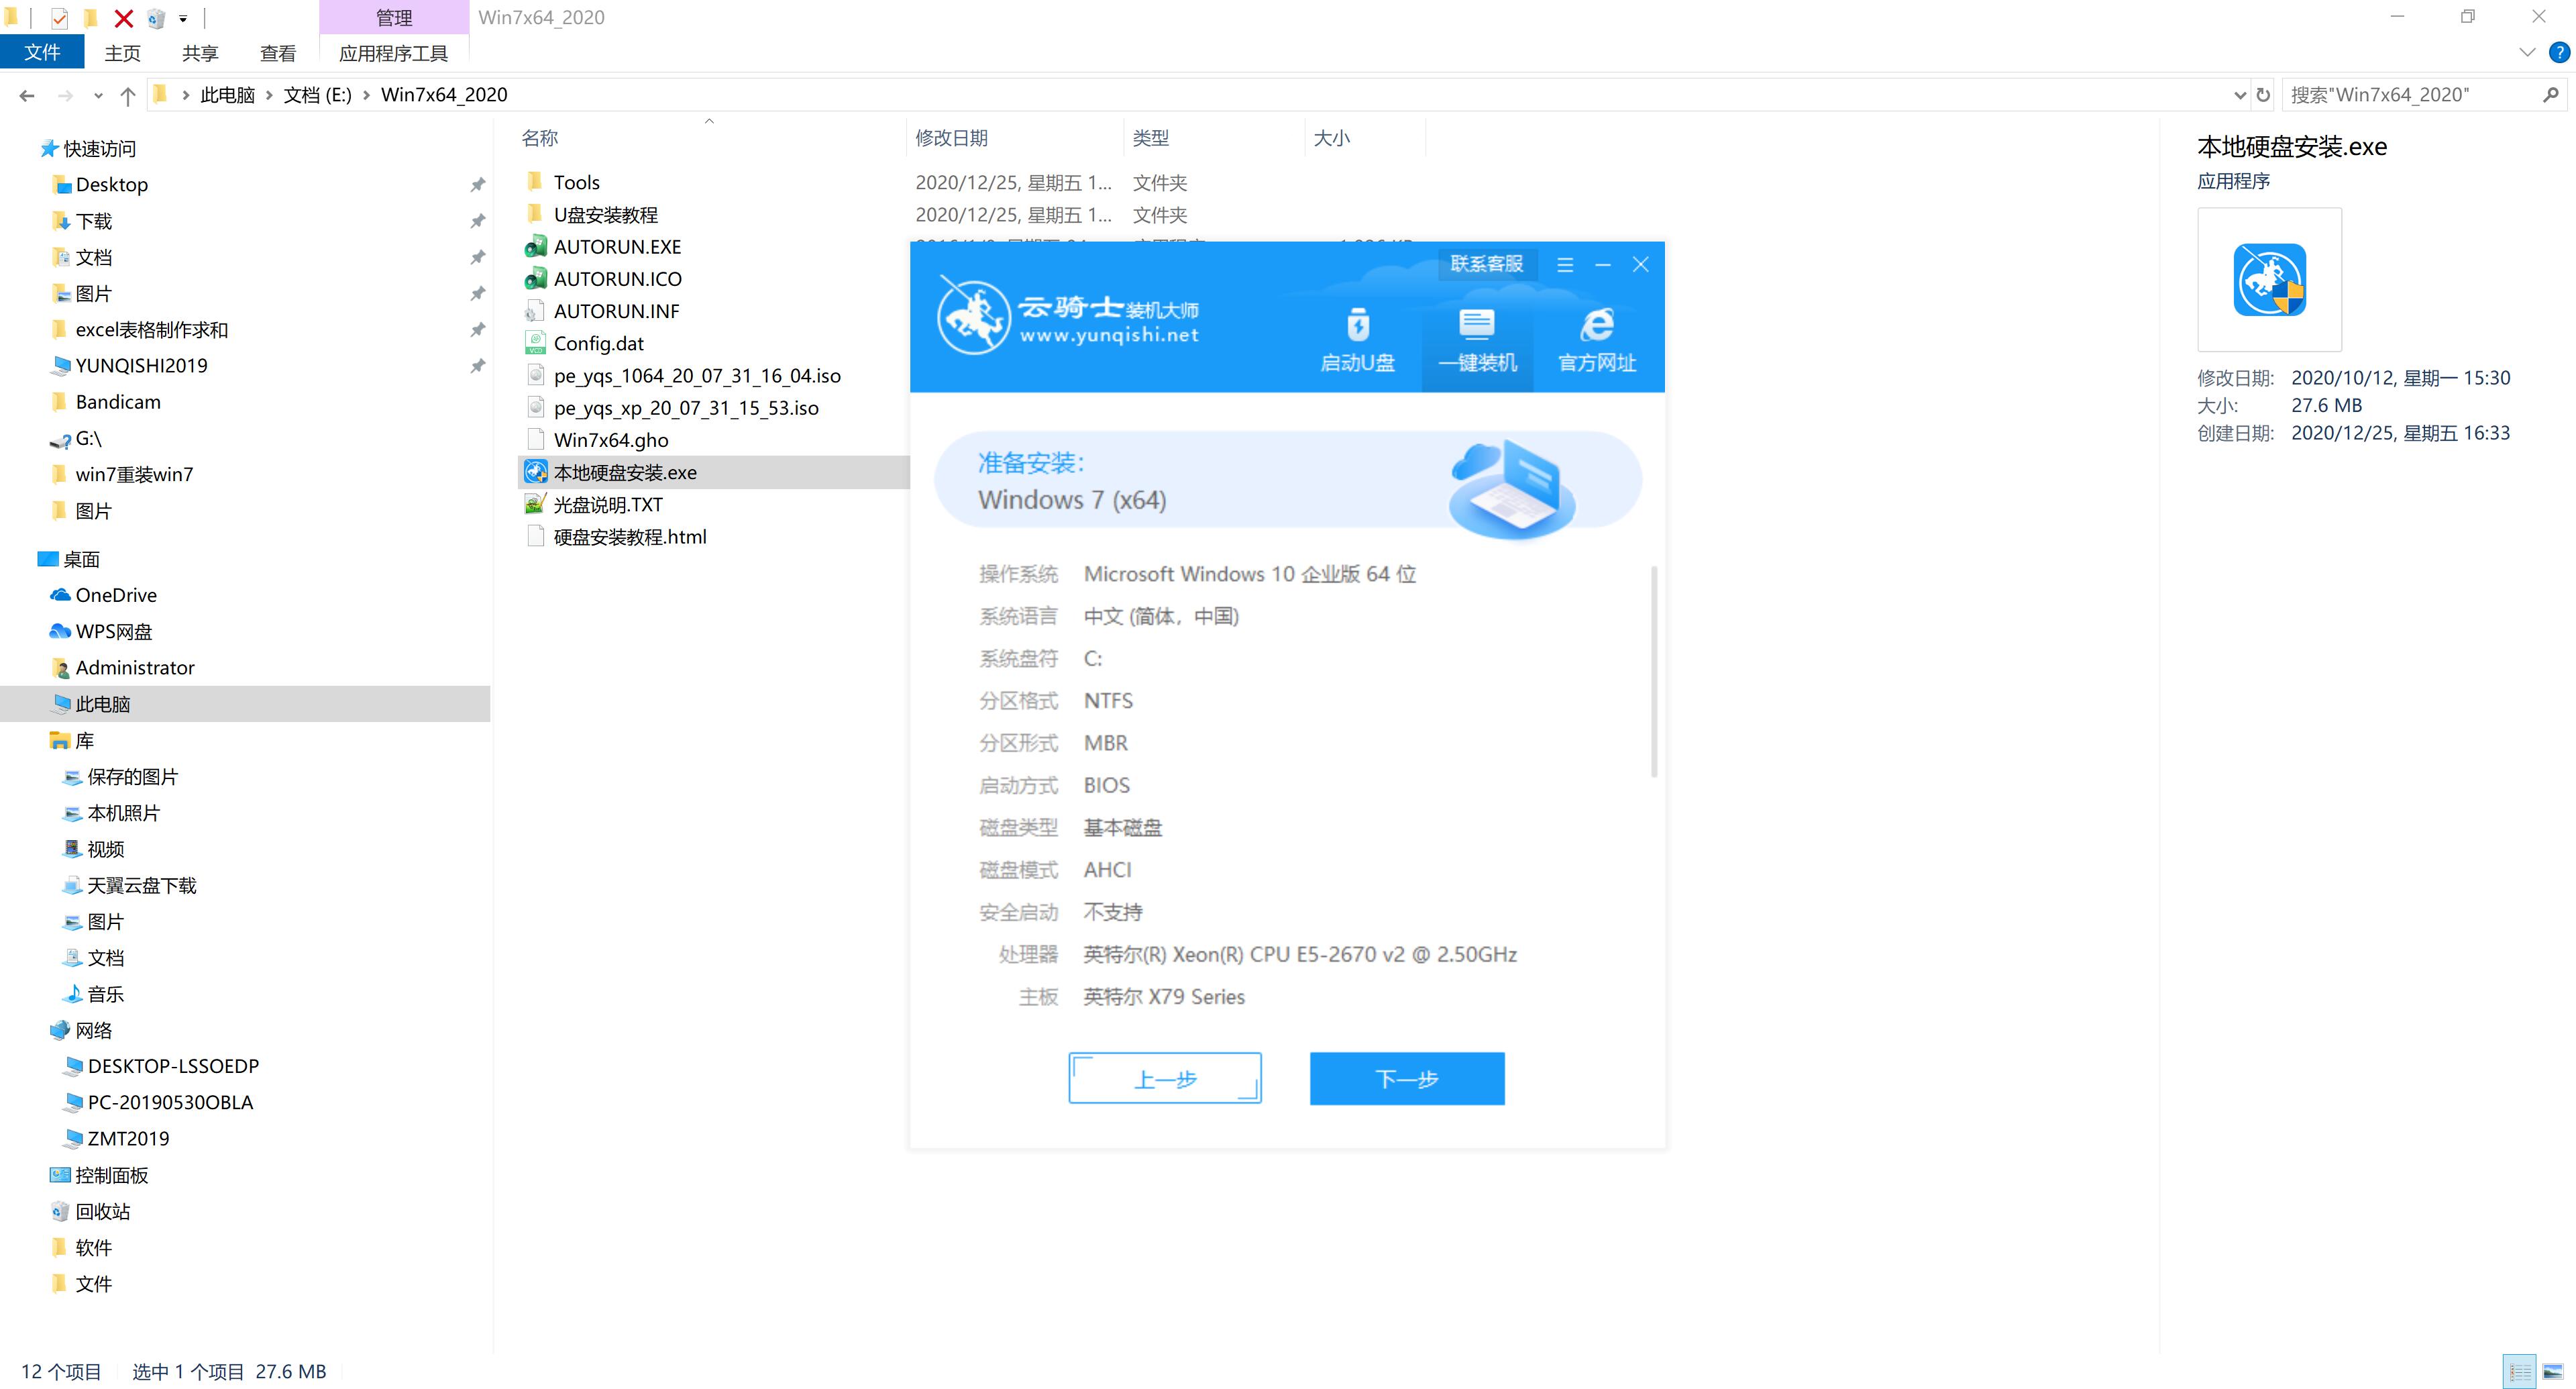 新版技术员联盟系统 GHOST Window7 X64 SP1 纯净中文旗舰版系统下载 V2022.11(4)